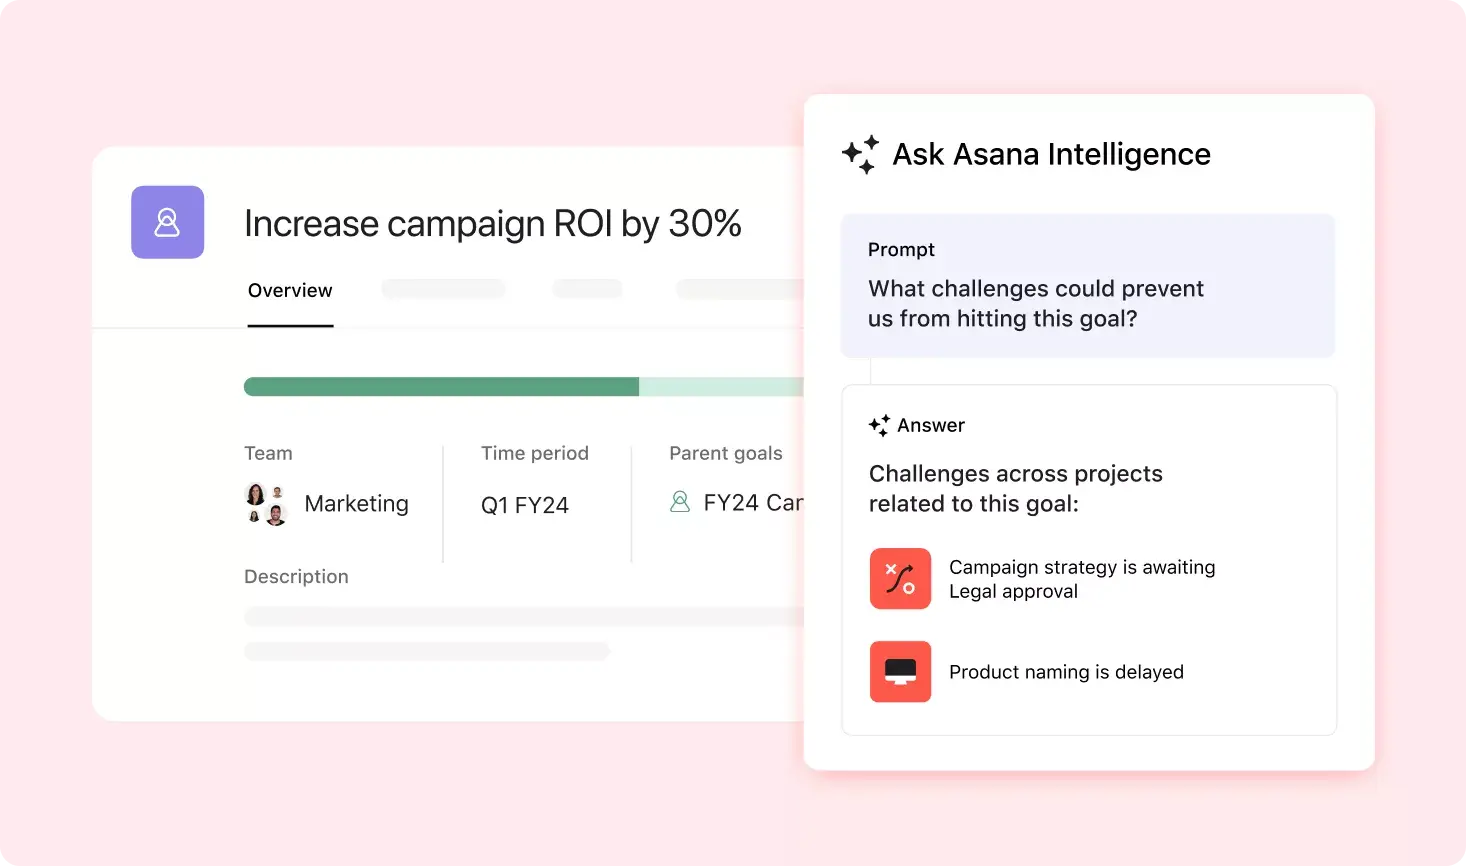 "어떤 문제가 프로젝트 목표를 달성하는 데 방해가 될 수 있는지" 프롬프트에 응답하는 Asana Intelligence를 보여주는 Asana 제품 UI